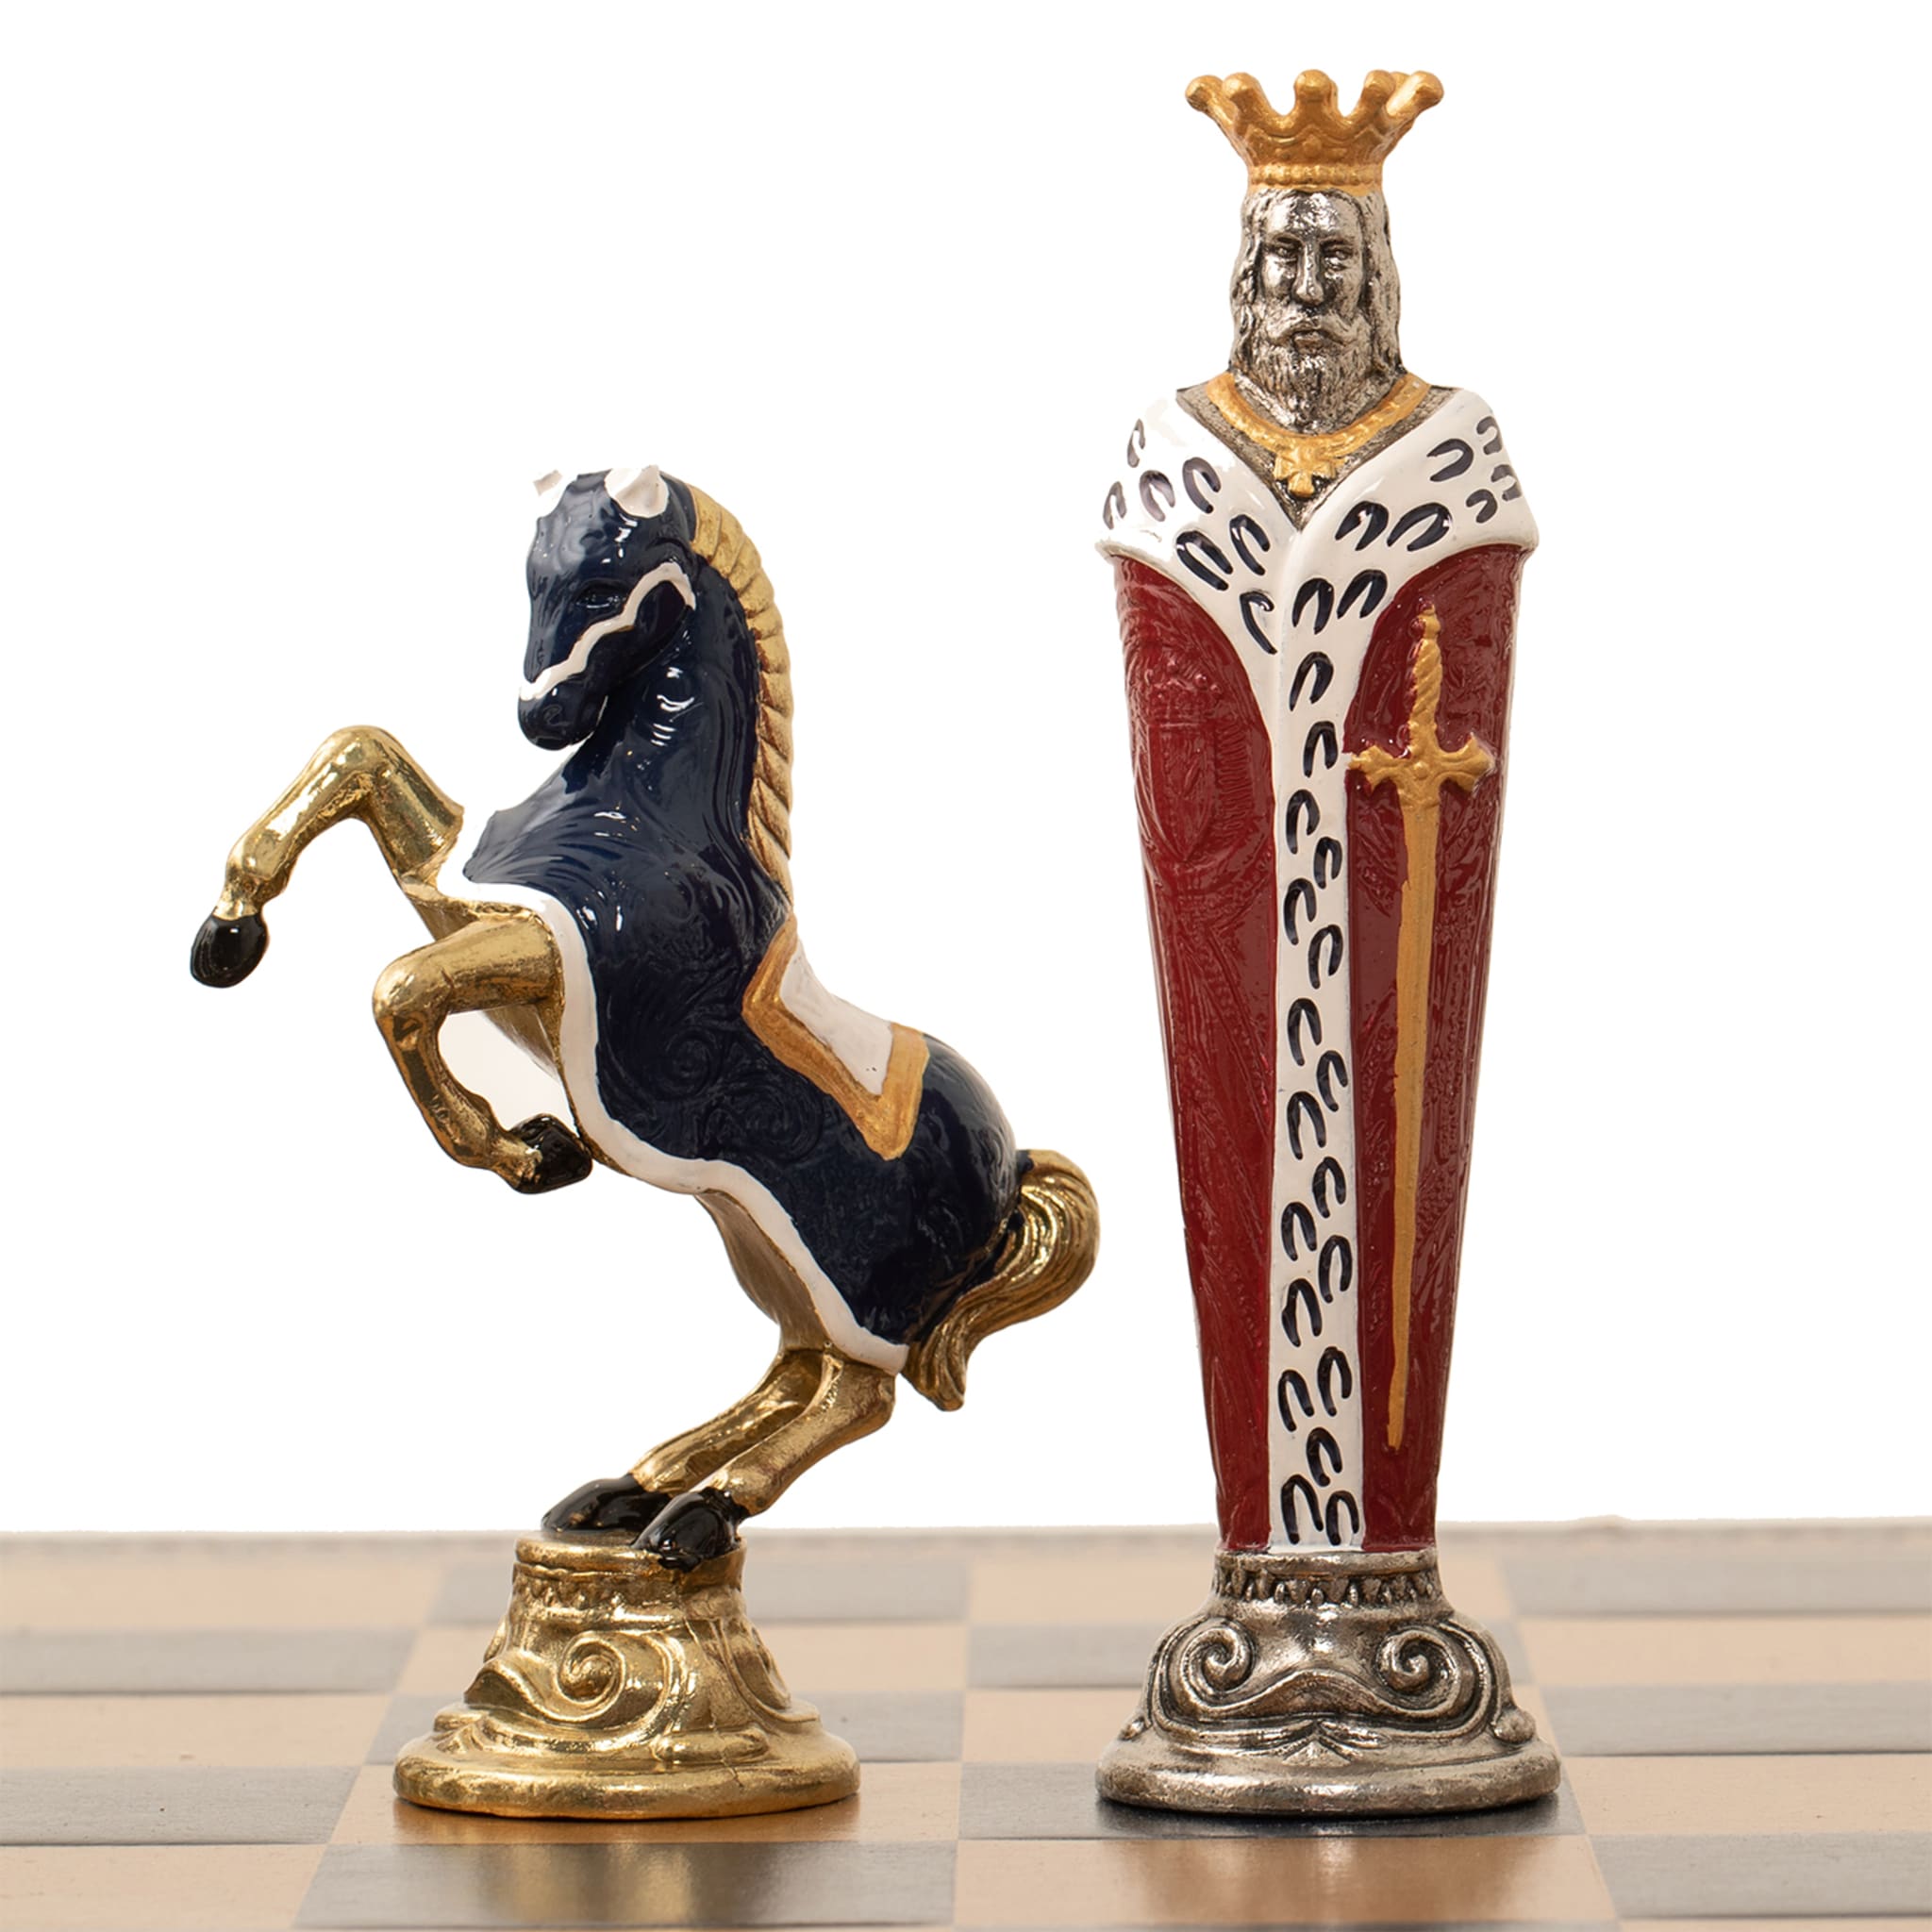 Rinascimento Fiorentino Chess Set - Alternative view 5